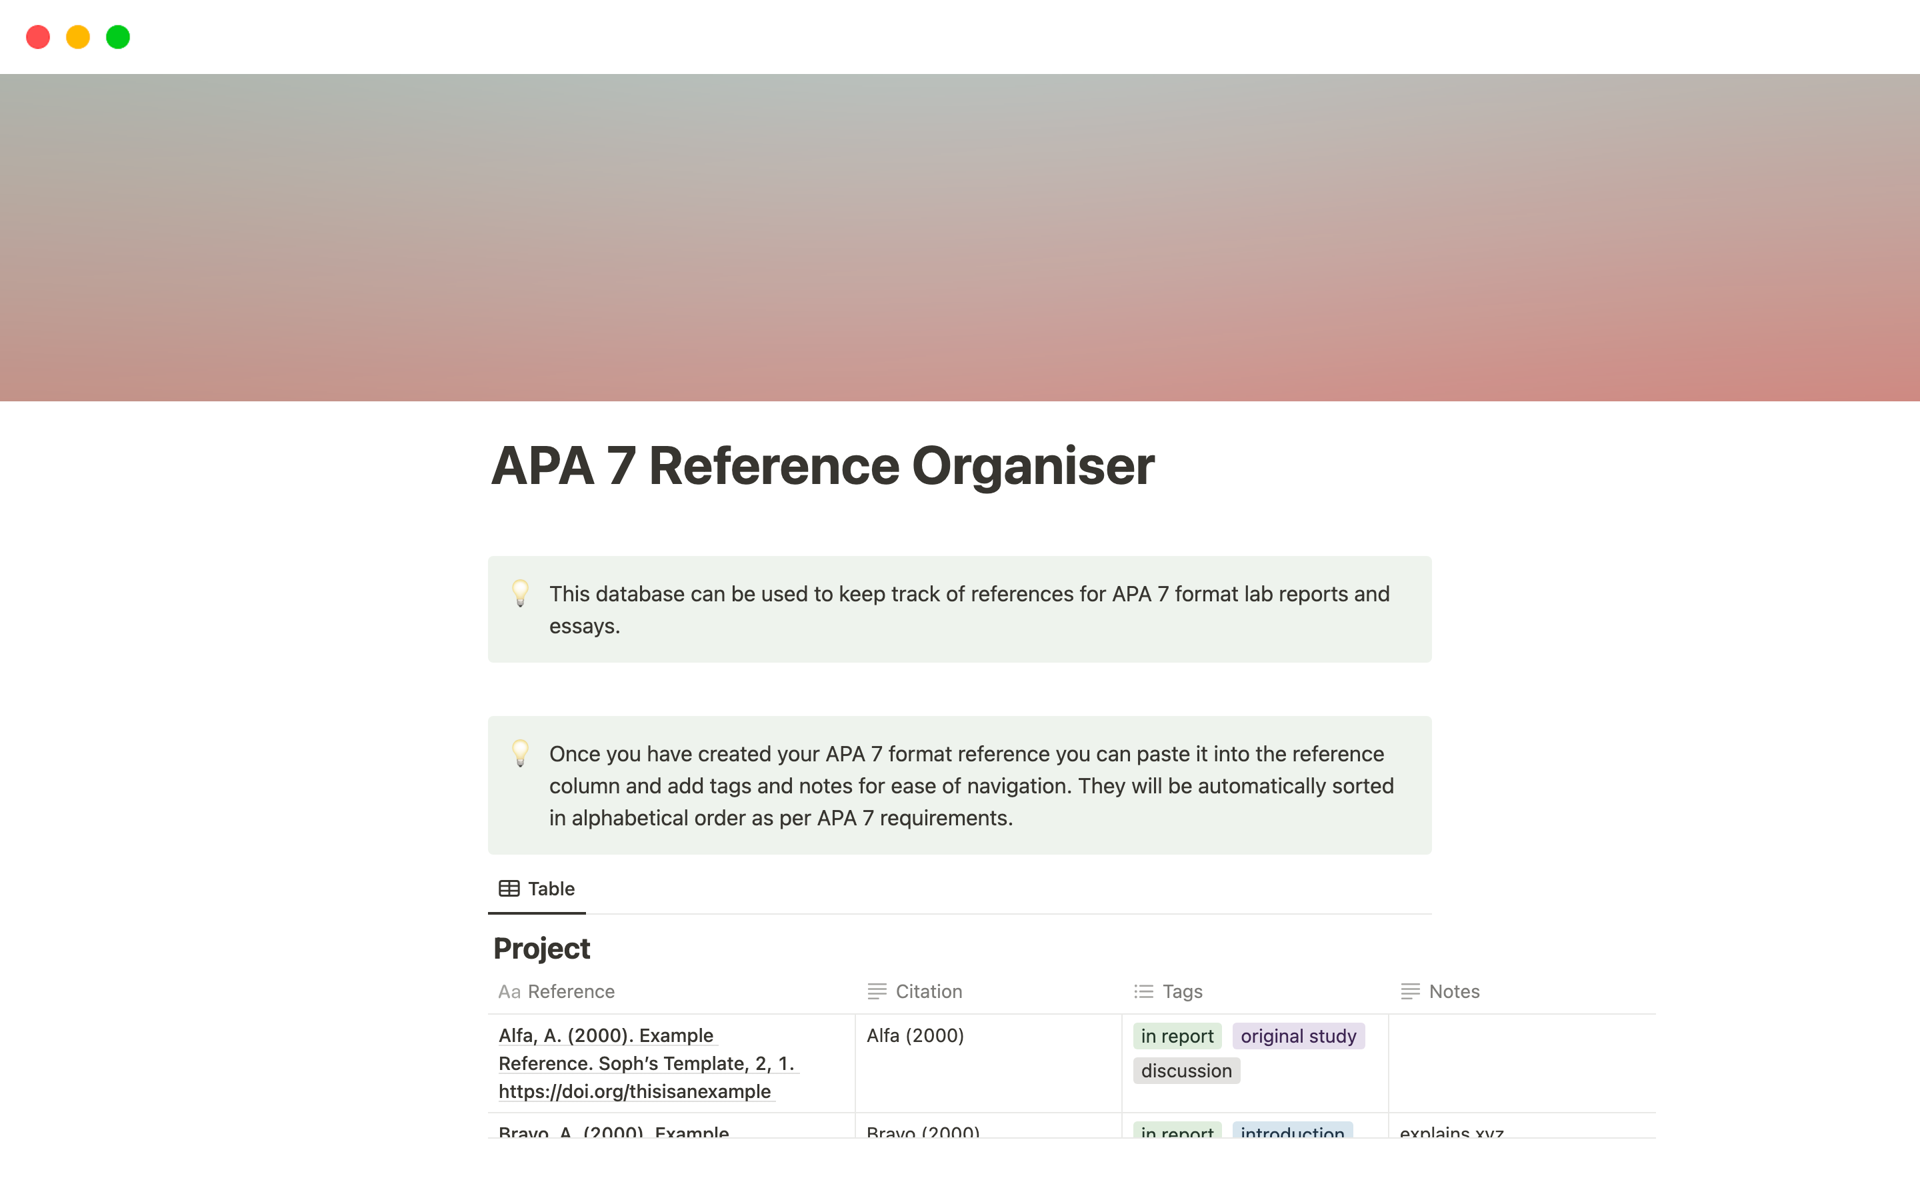 Vista previa de una plantilla para APA 7 Reference Organiser